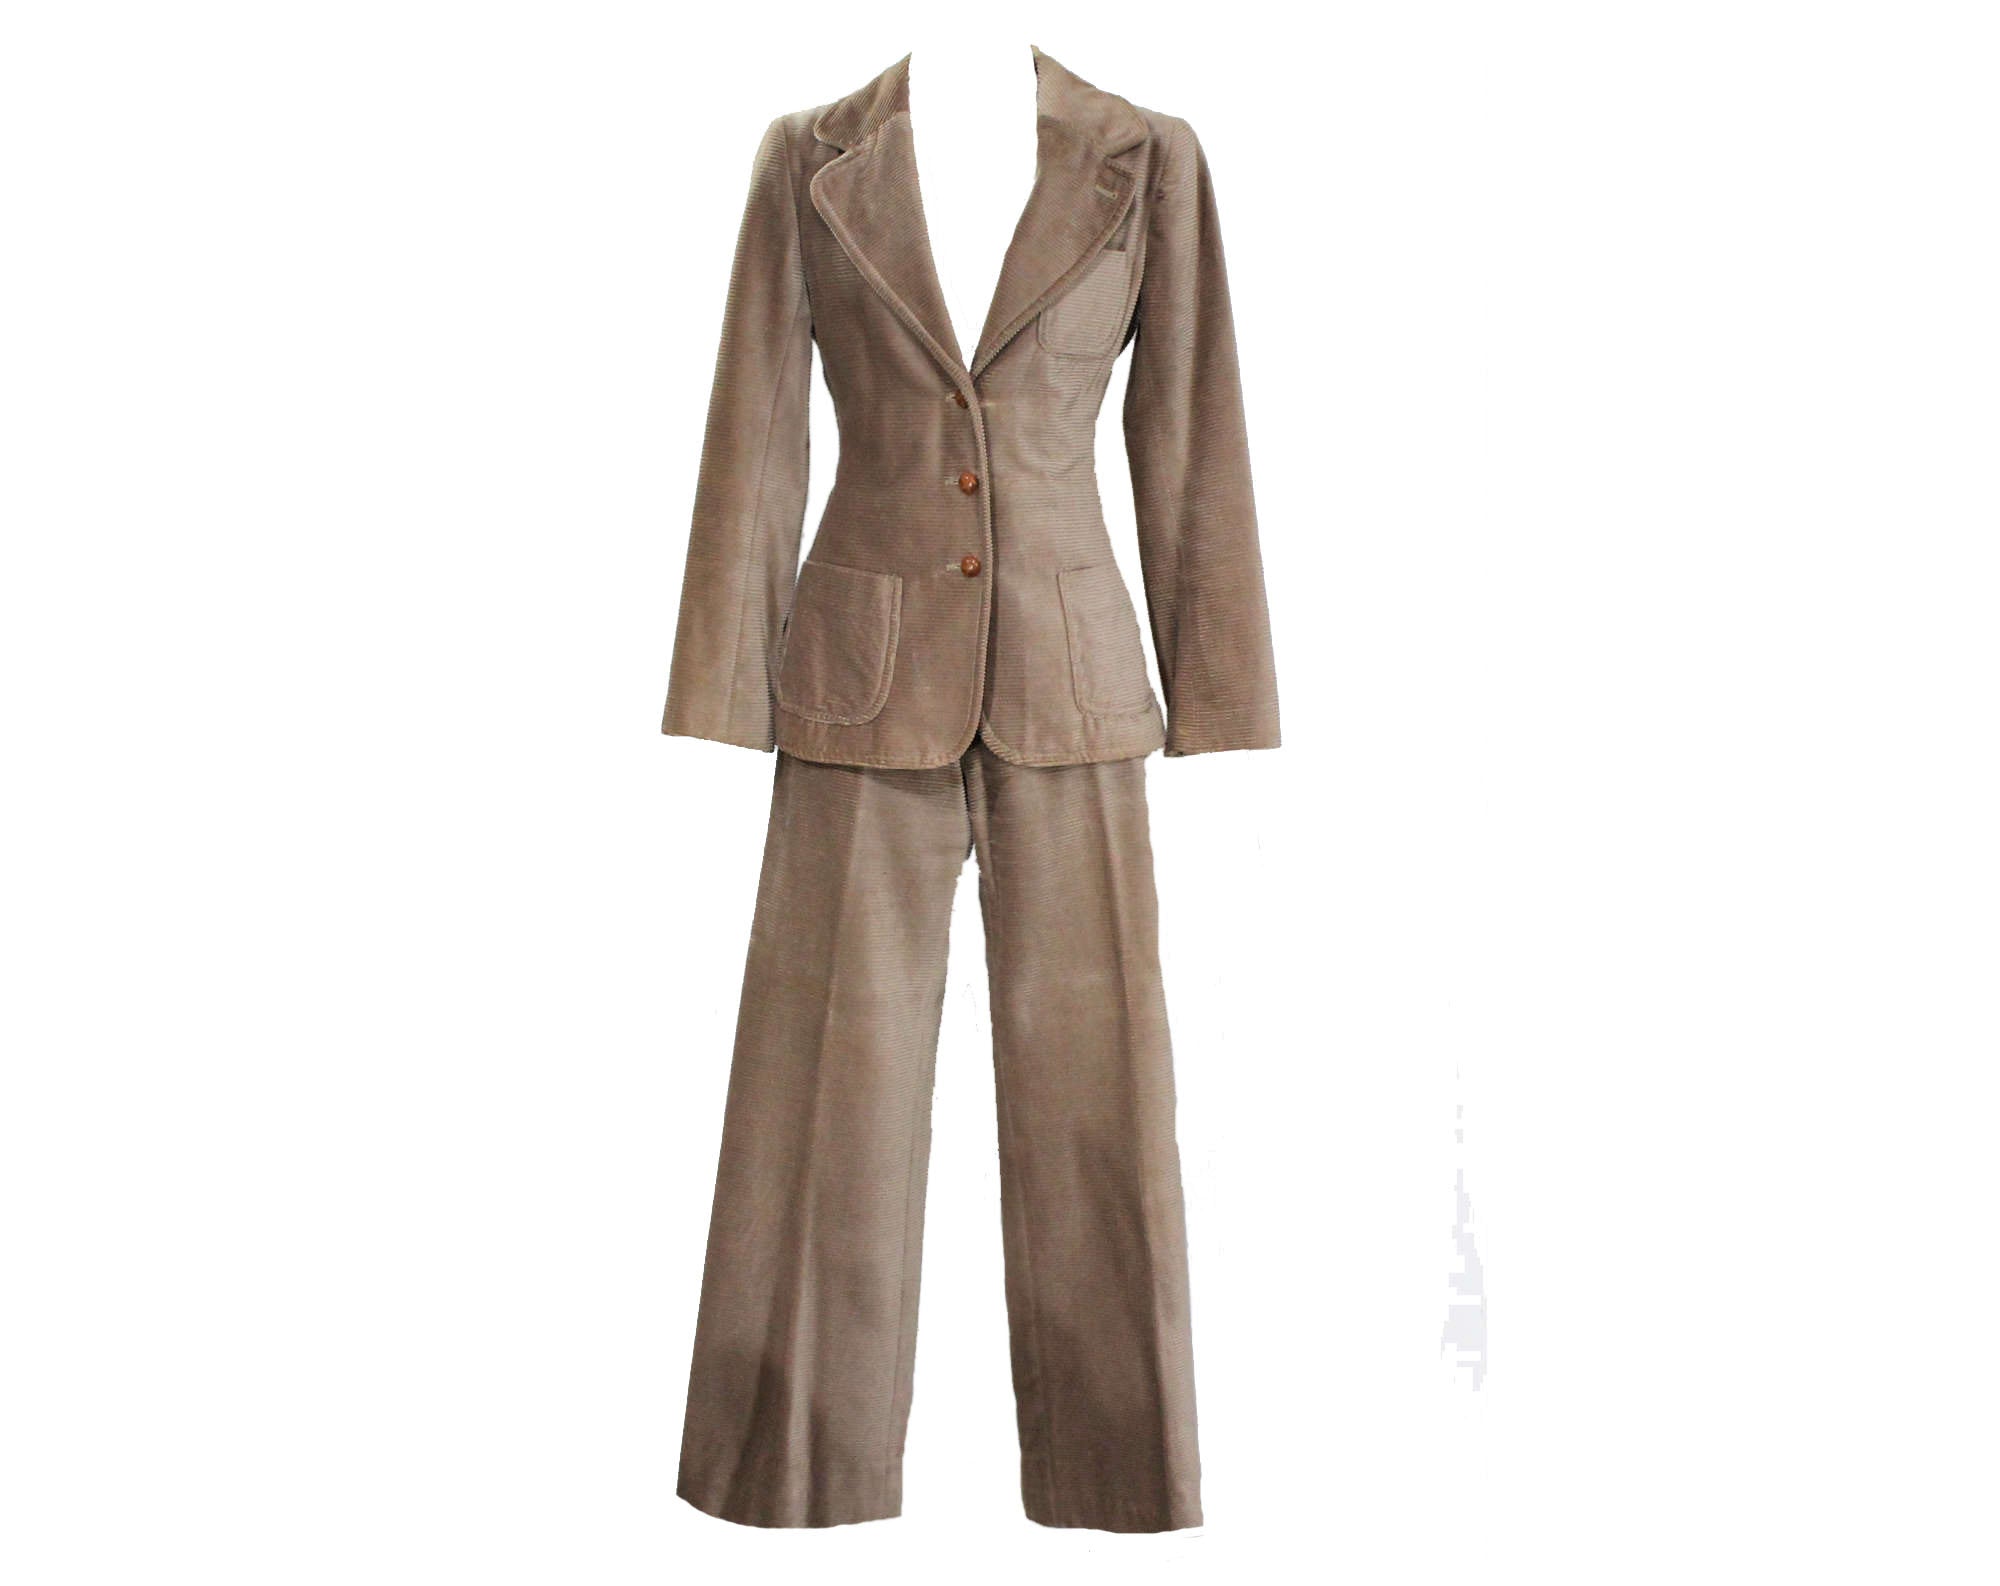 Size 6 Pant Suit - Designer Liz Claiborne Pantsuit - Plush Mushroom Be –  Vintage Vixen Clothing